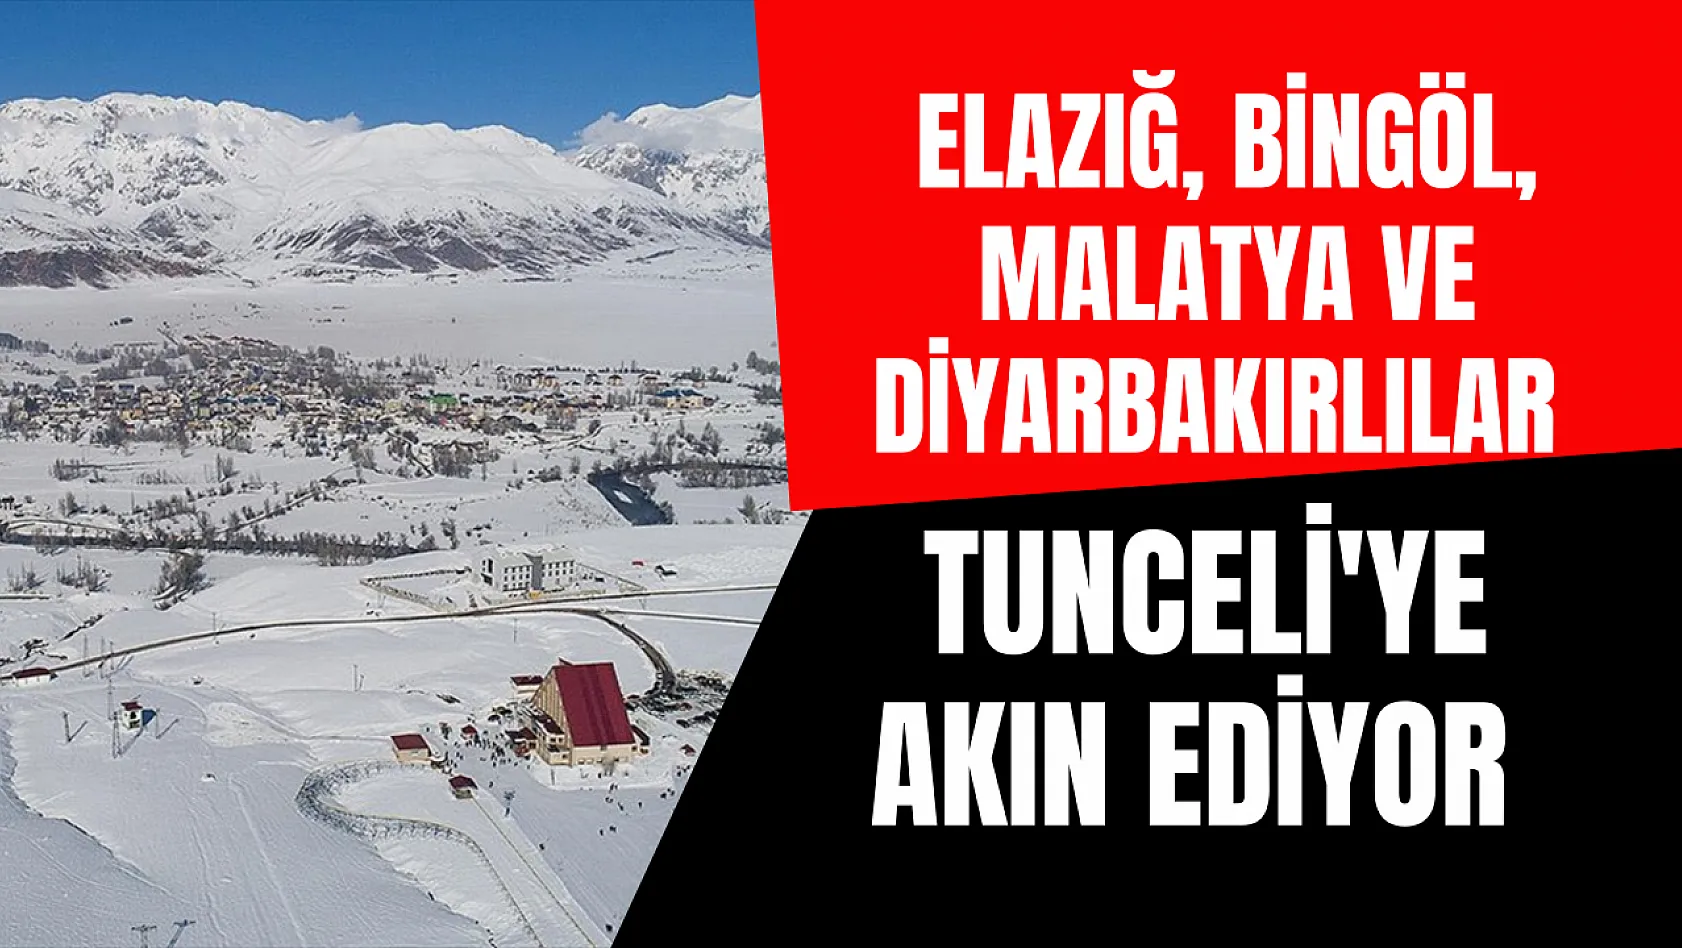 Malatya, Elazığ, Bingöl ve Diyarbakırlılar Tunceli'ye akın ediyor